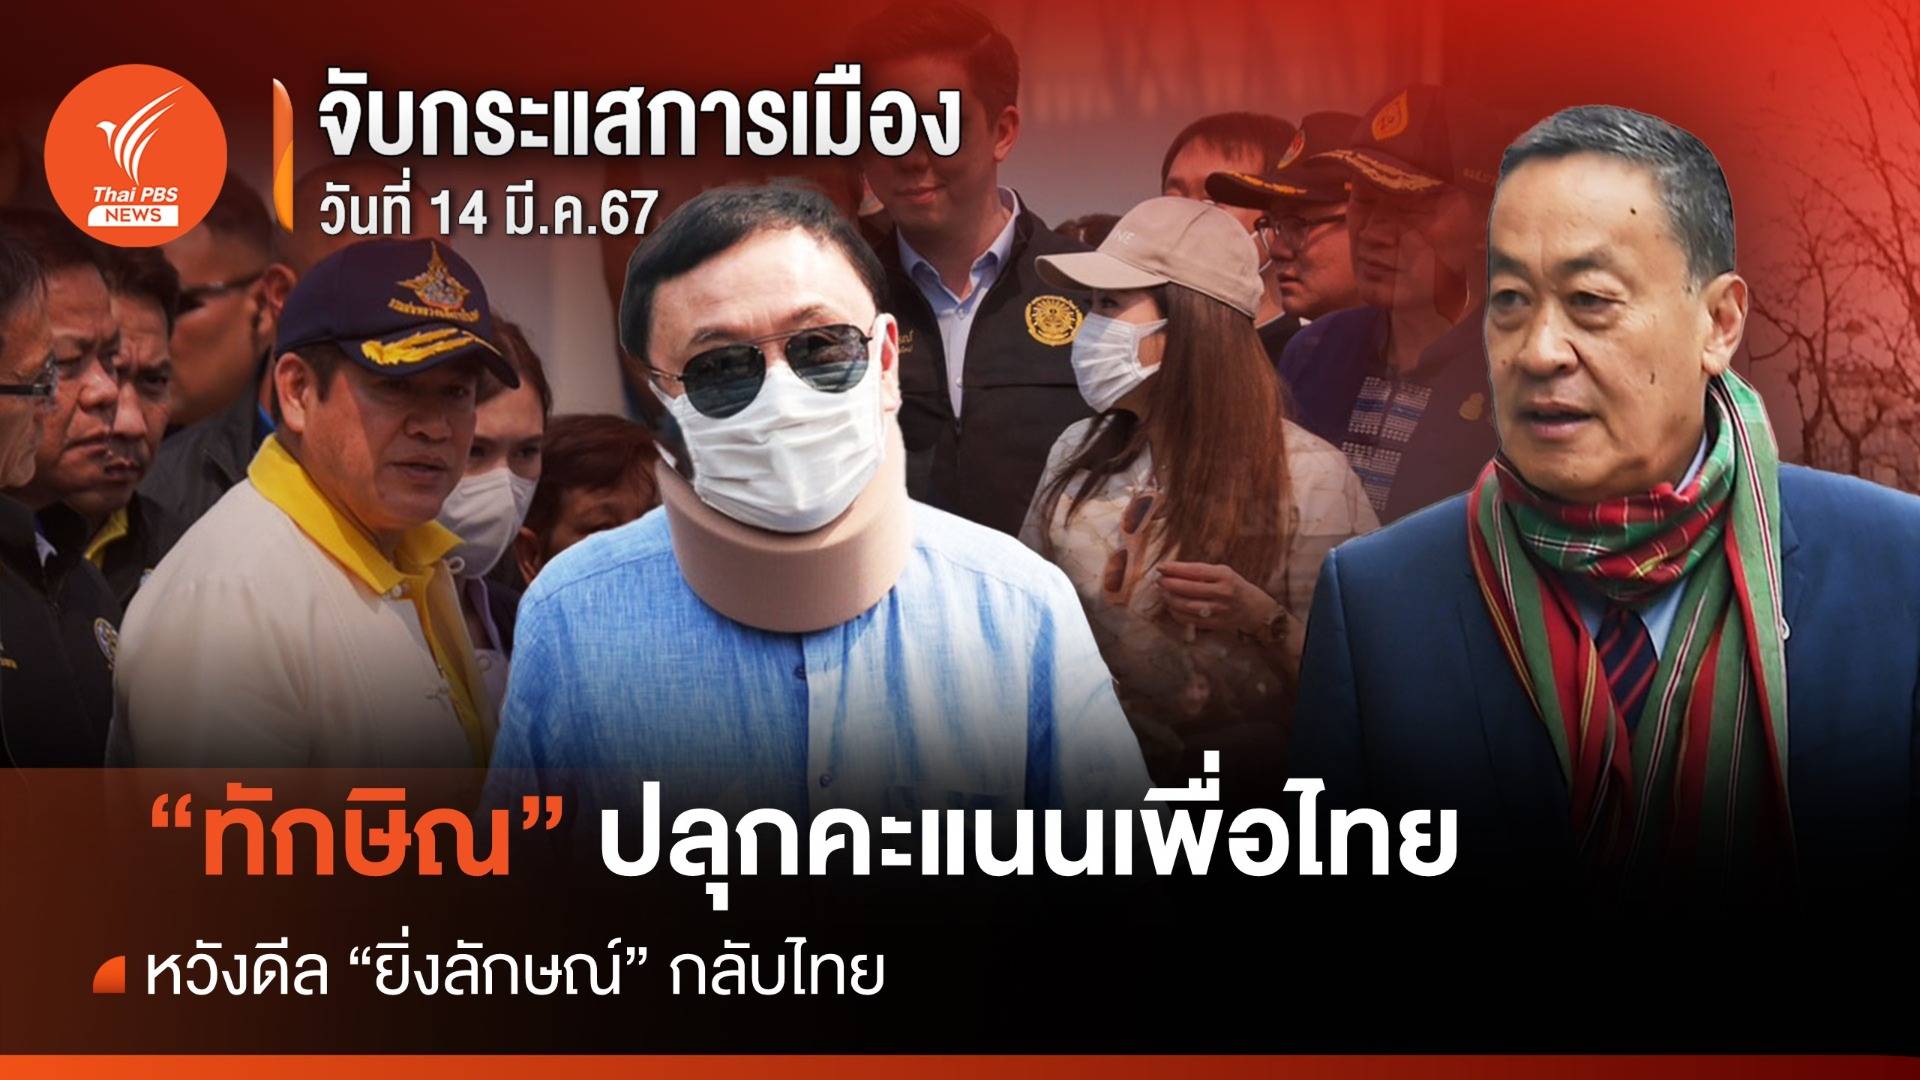 จับกระแสการเมือง : วันที่ 14 มี.ค.67 "ทักษิณ" ปลุกคะแนนเพื่อไทยเชียงใหม่ หวังดีล "ยิ่งลักษณ์" กลับไทย